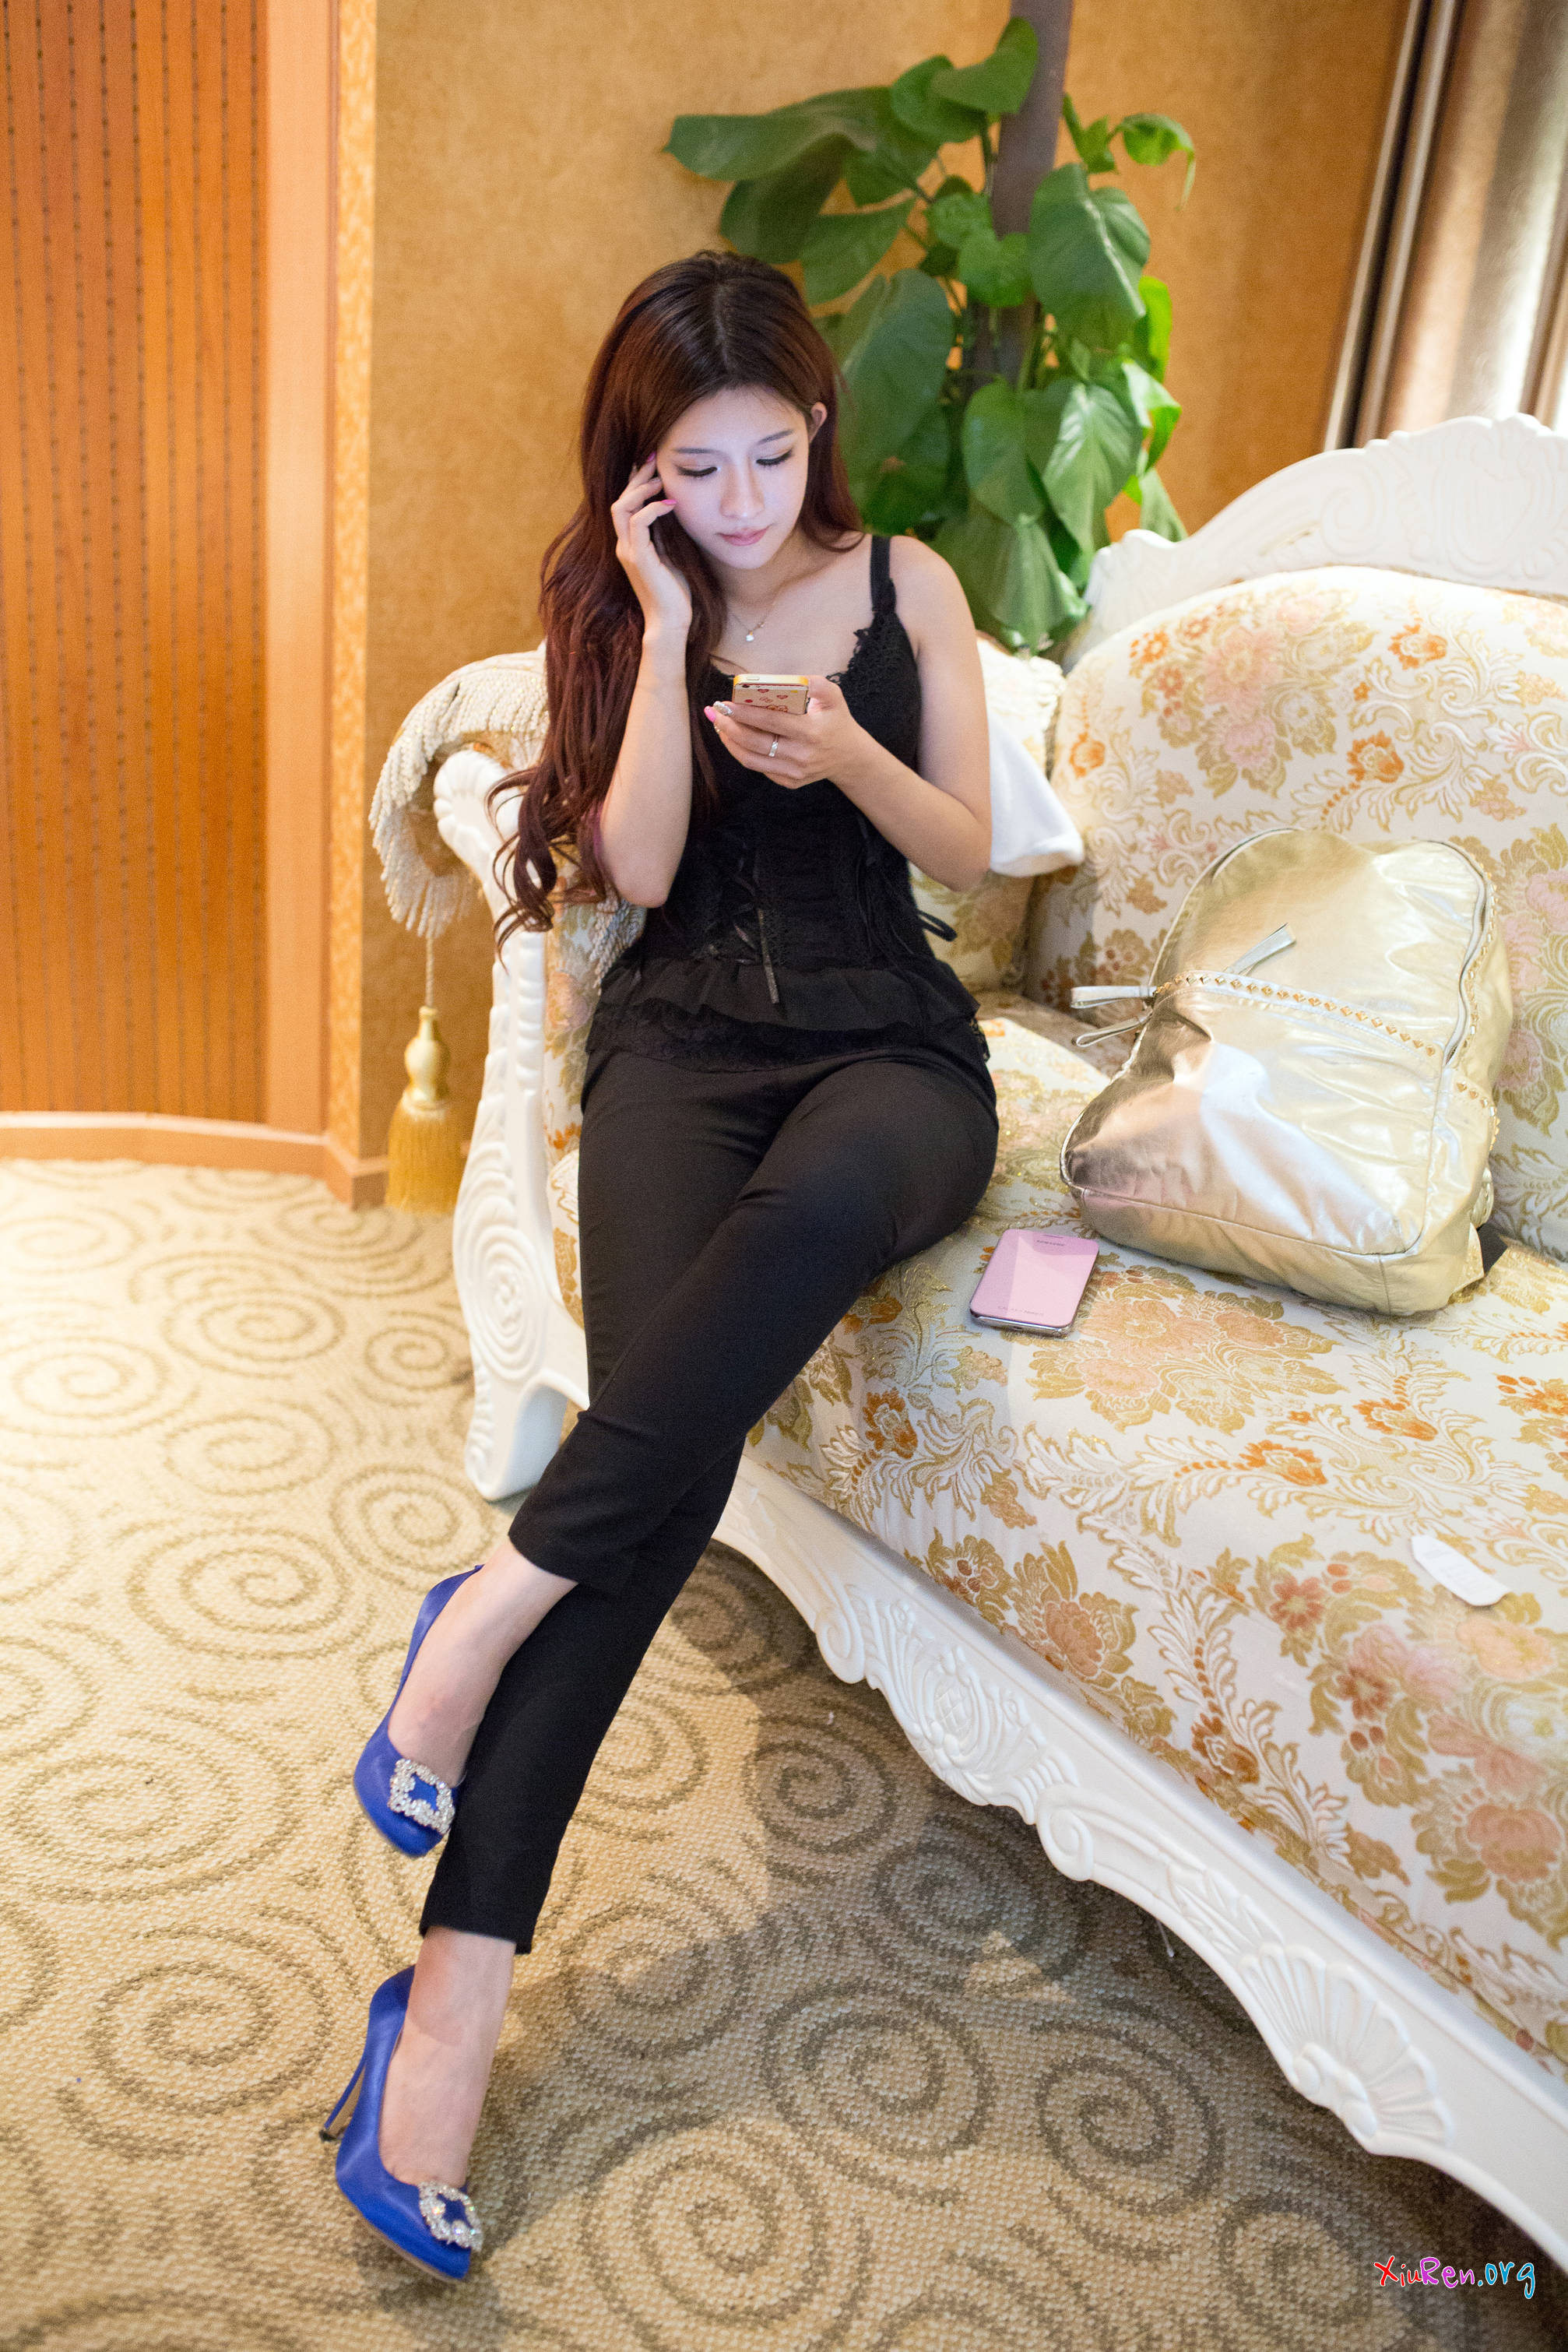 [TuiGirl] No.065 Silvia 易阳 Yi Yang | Người mẫu Trung Quốc - Ảnh đẹp